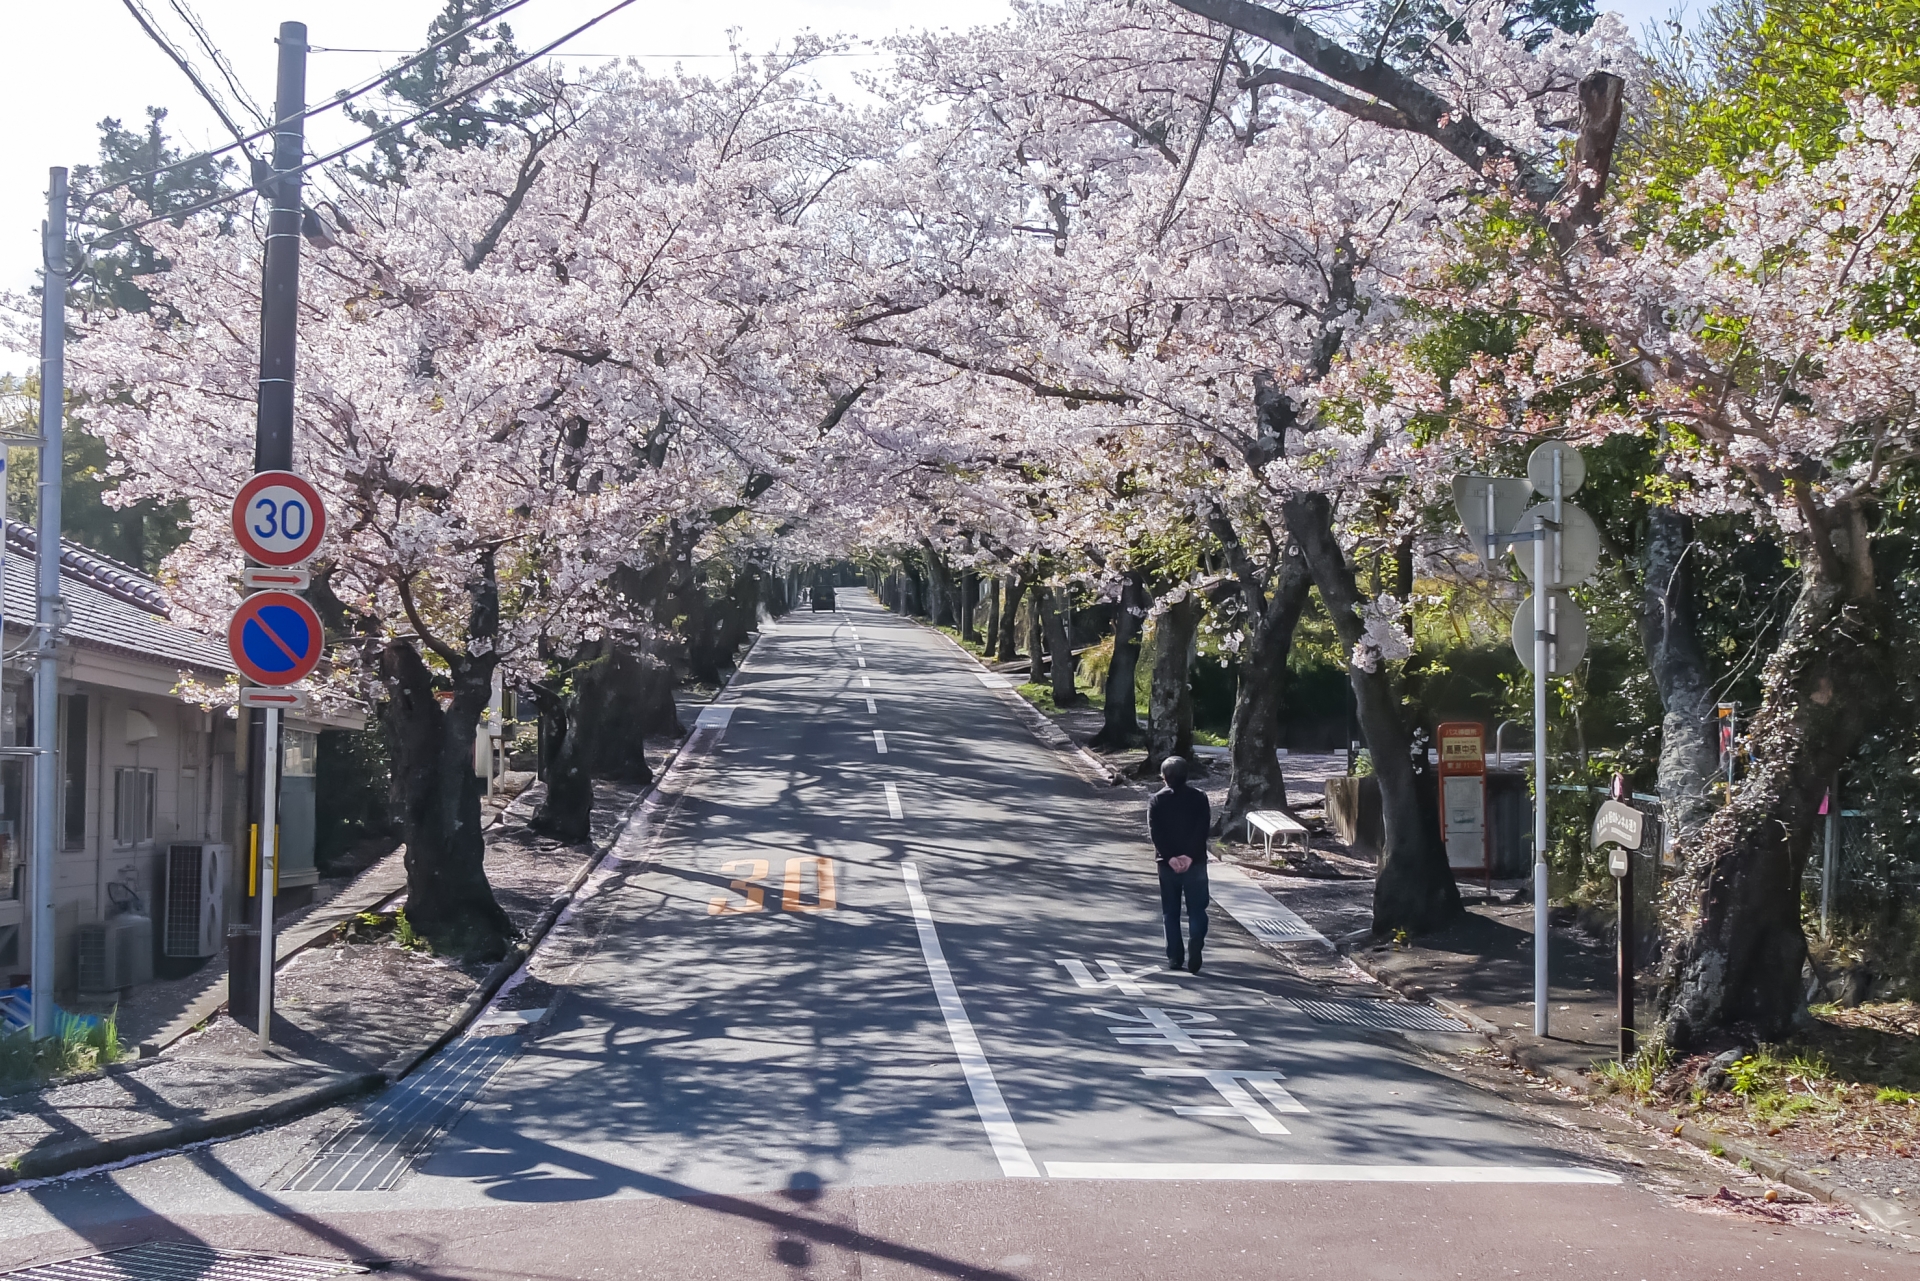 จุด ชมซากุระ ใน ญี่ปุ่น - อุโมงค์ซากุระหน้าสถานีอิซุโคเก็น (Izu Kogen Cherry Trees)